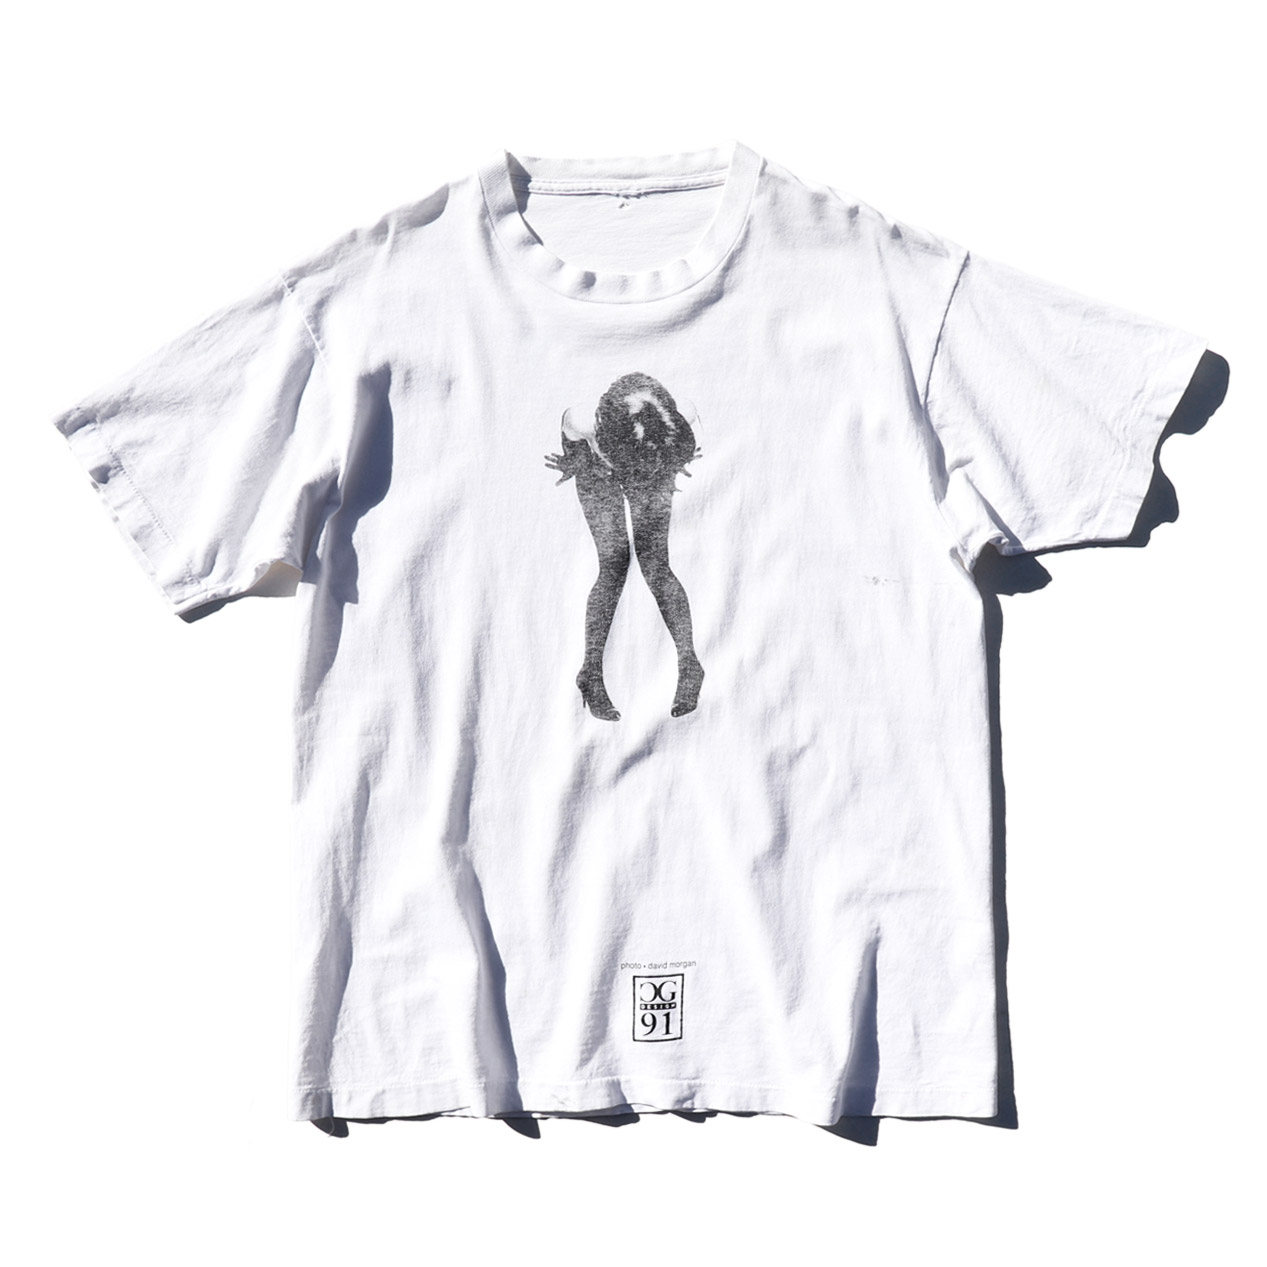 POST JUNK / 90's CG DESIGN “DAVID MORGAN” T-Shirt [About L]